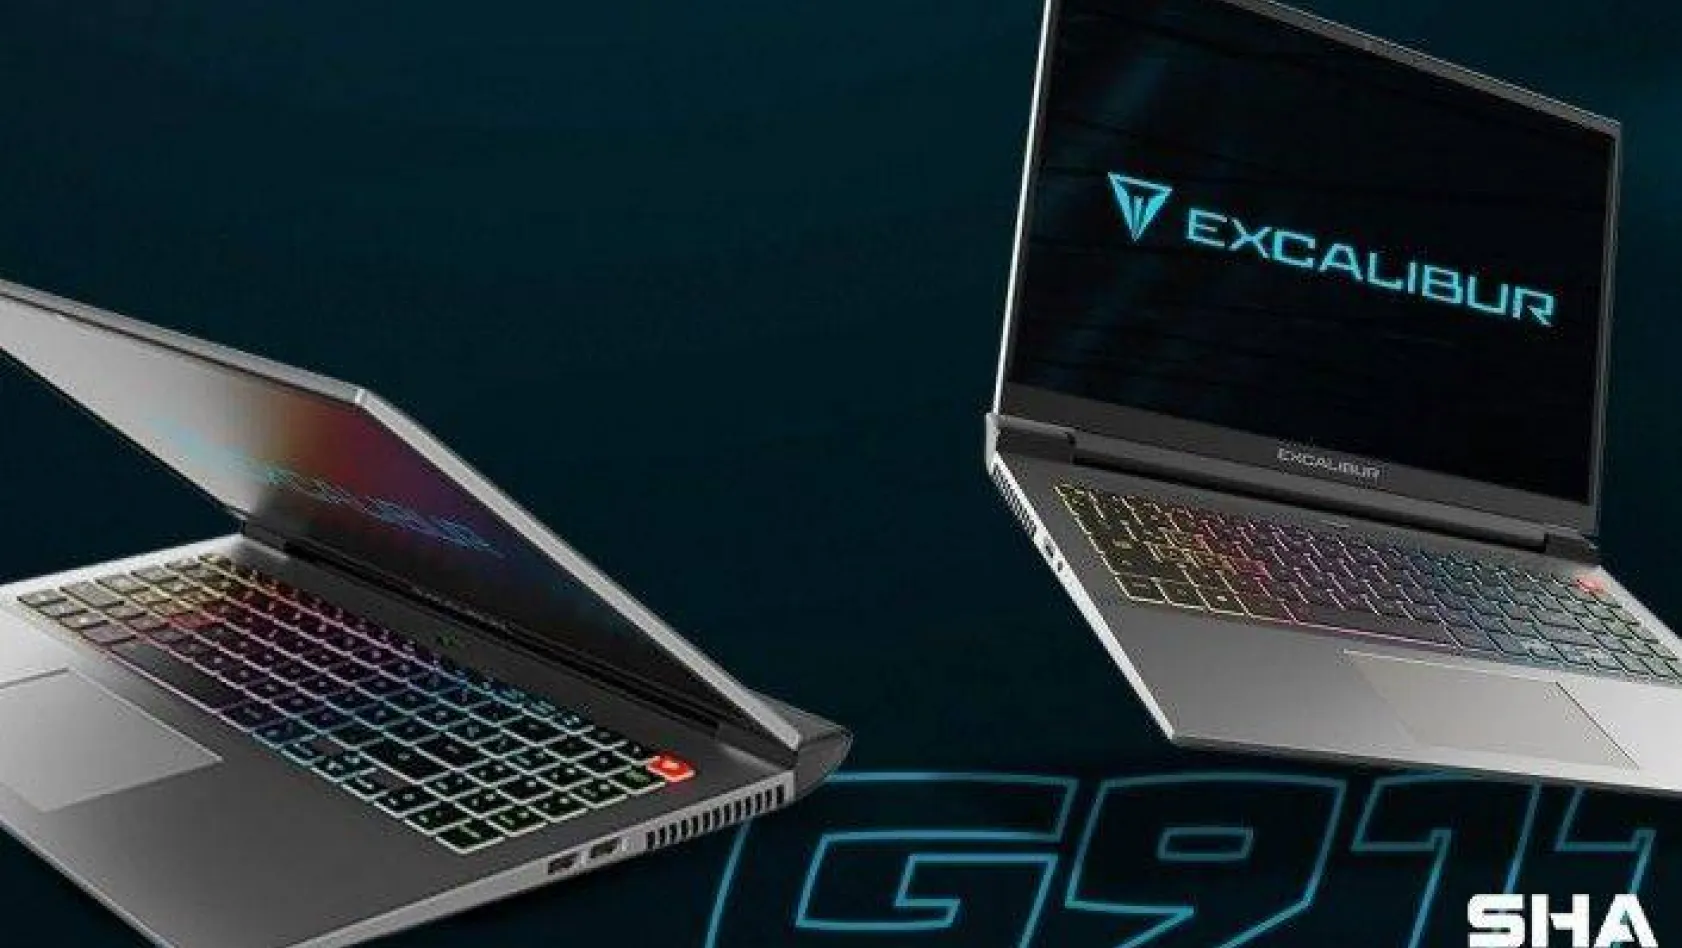 Profesyonellere yönelik üstün performanslı bilgisayar: Excalibur G911